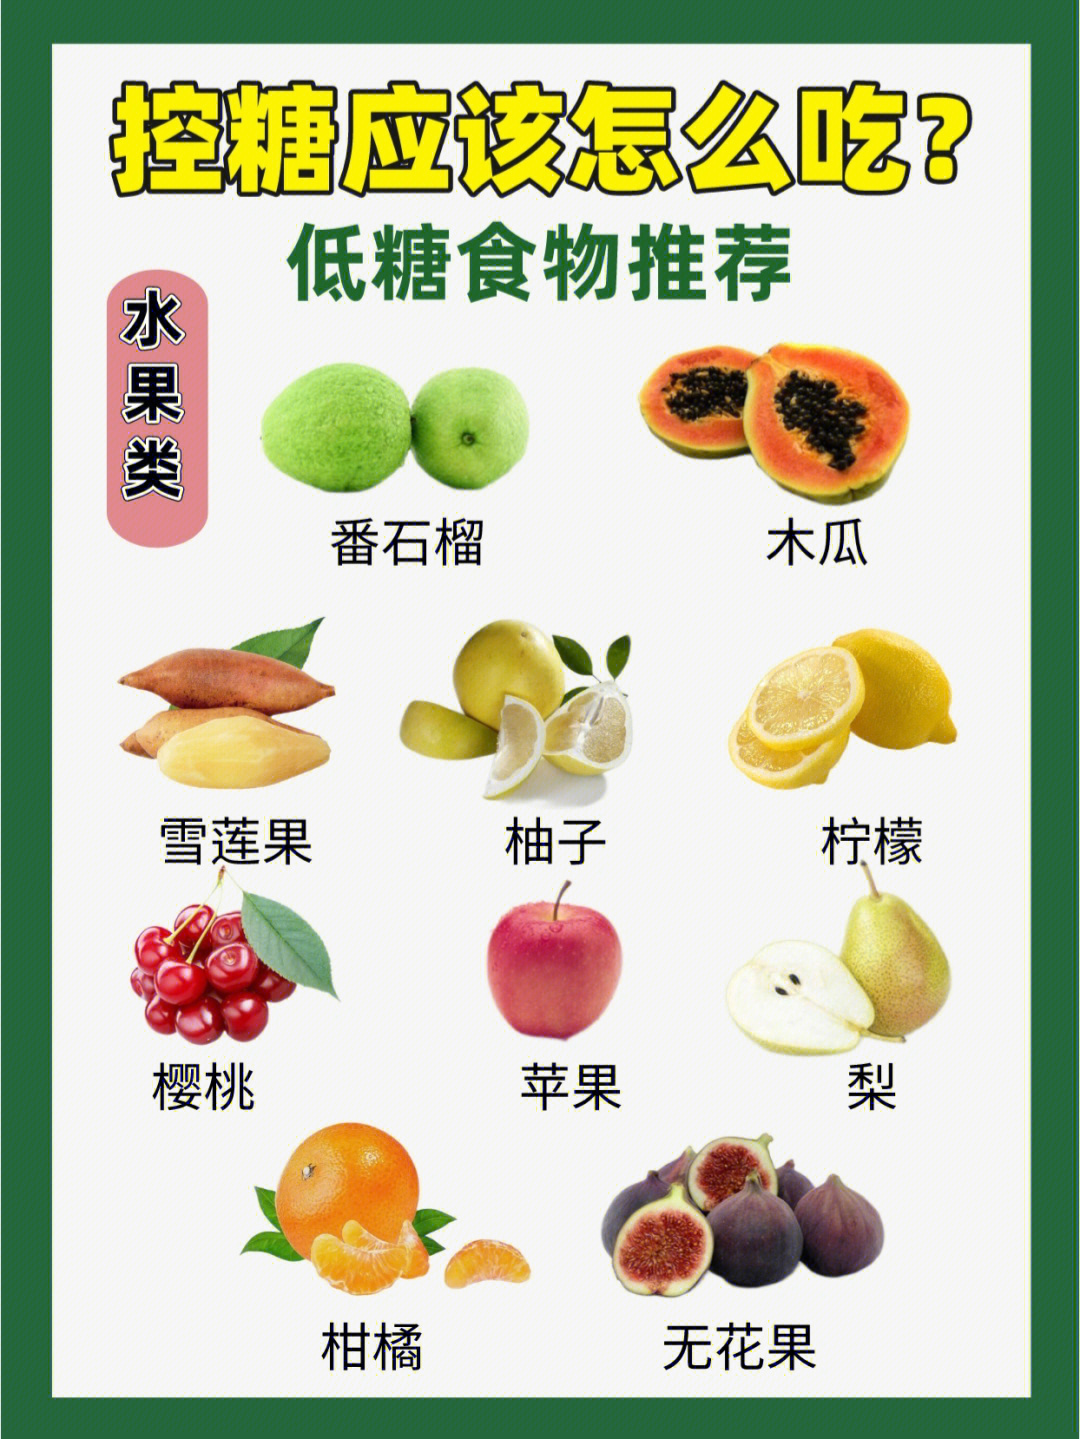 低糖蔬菜一览表图片